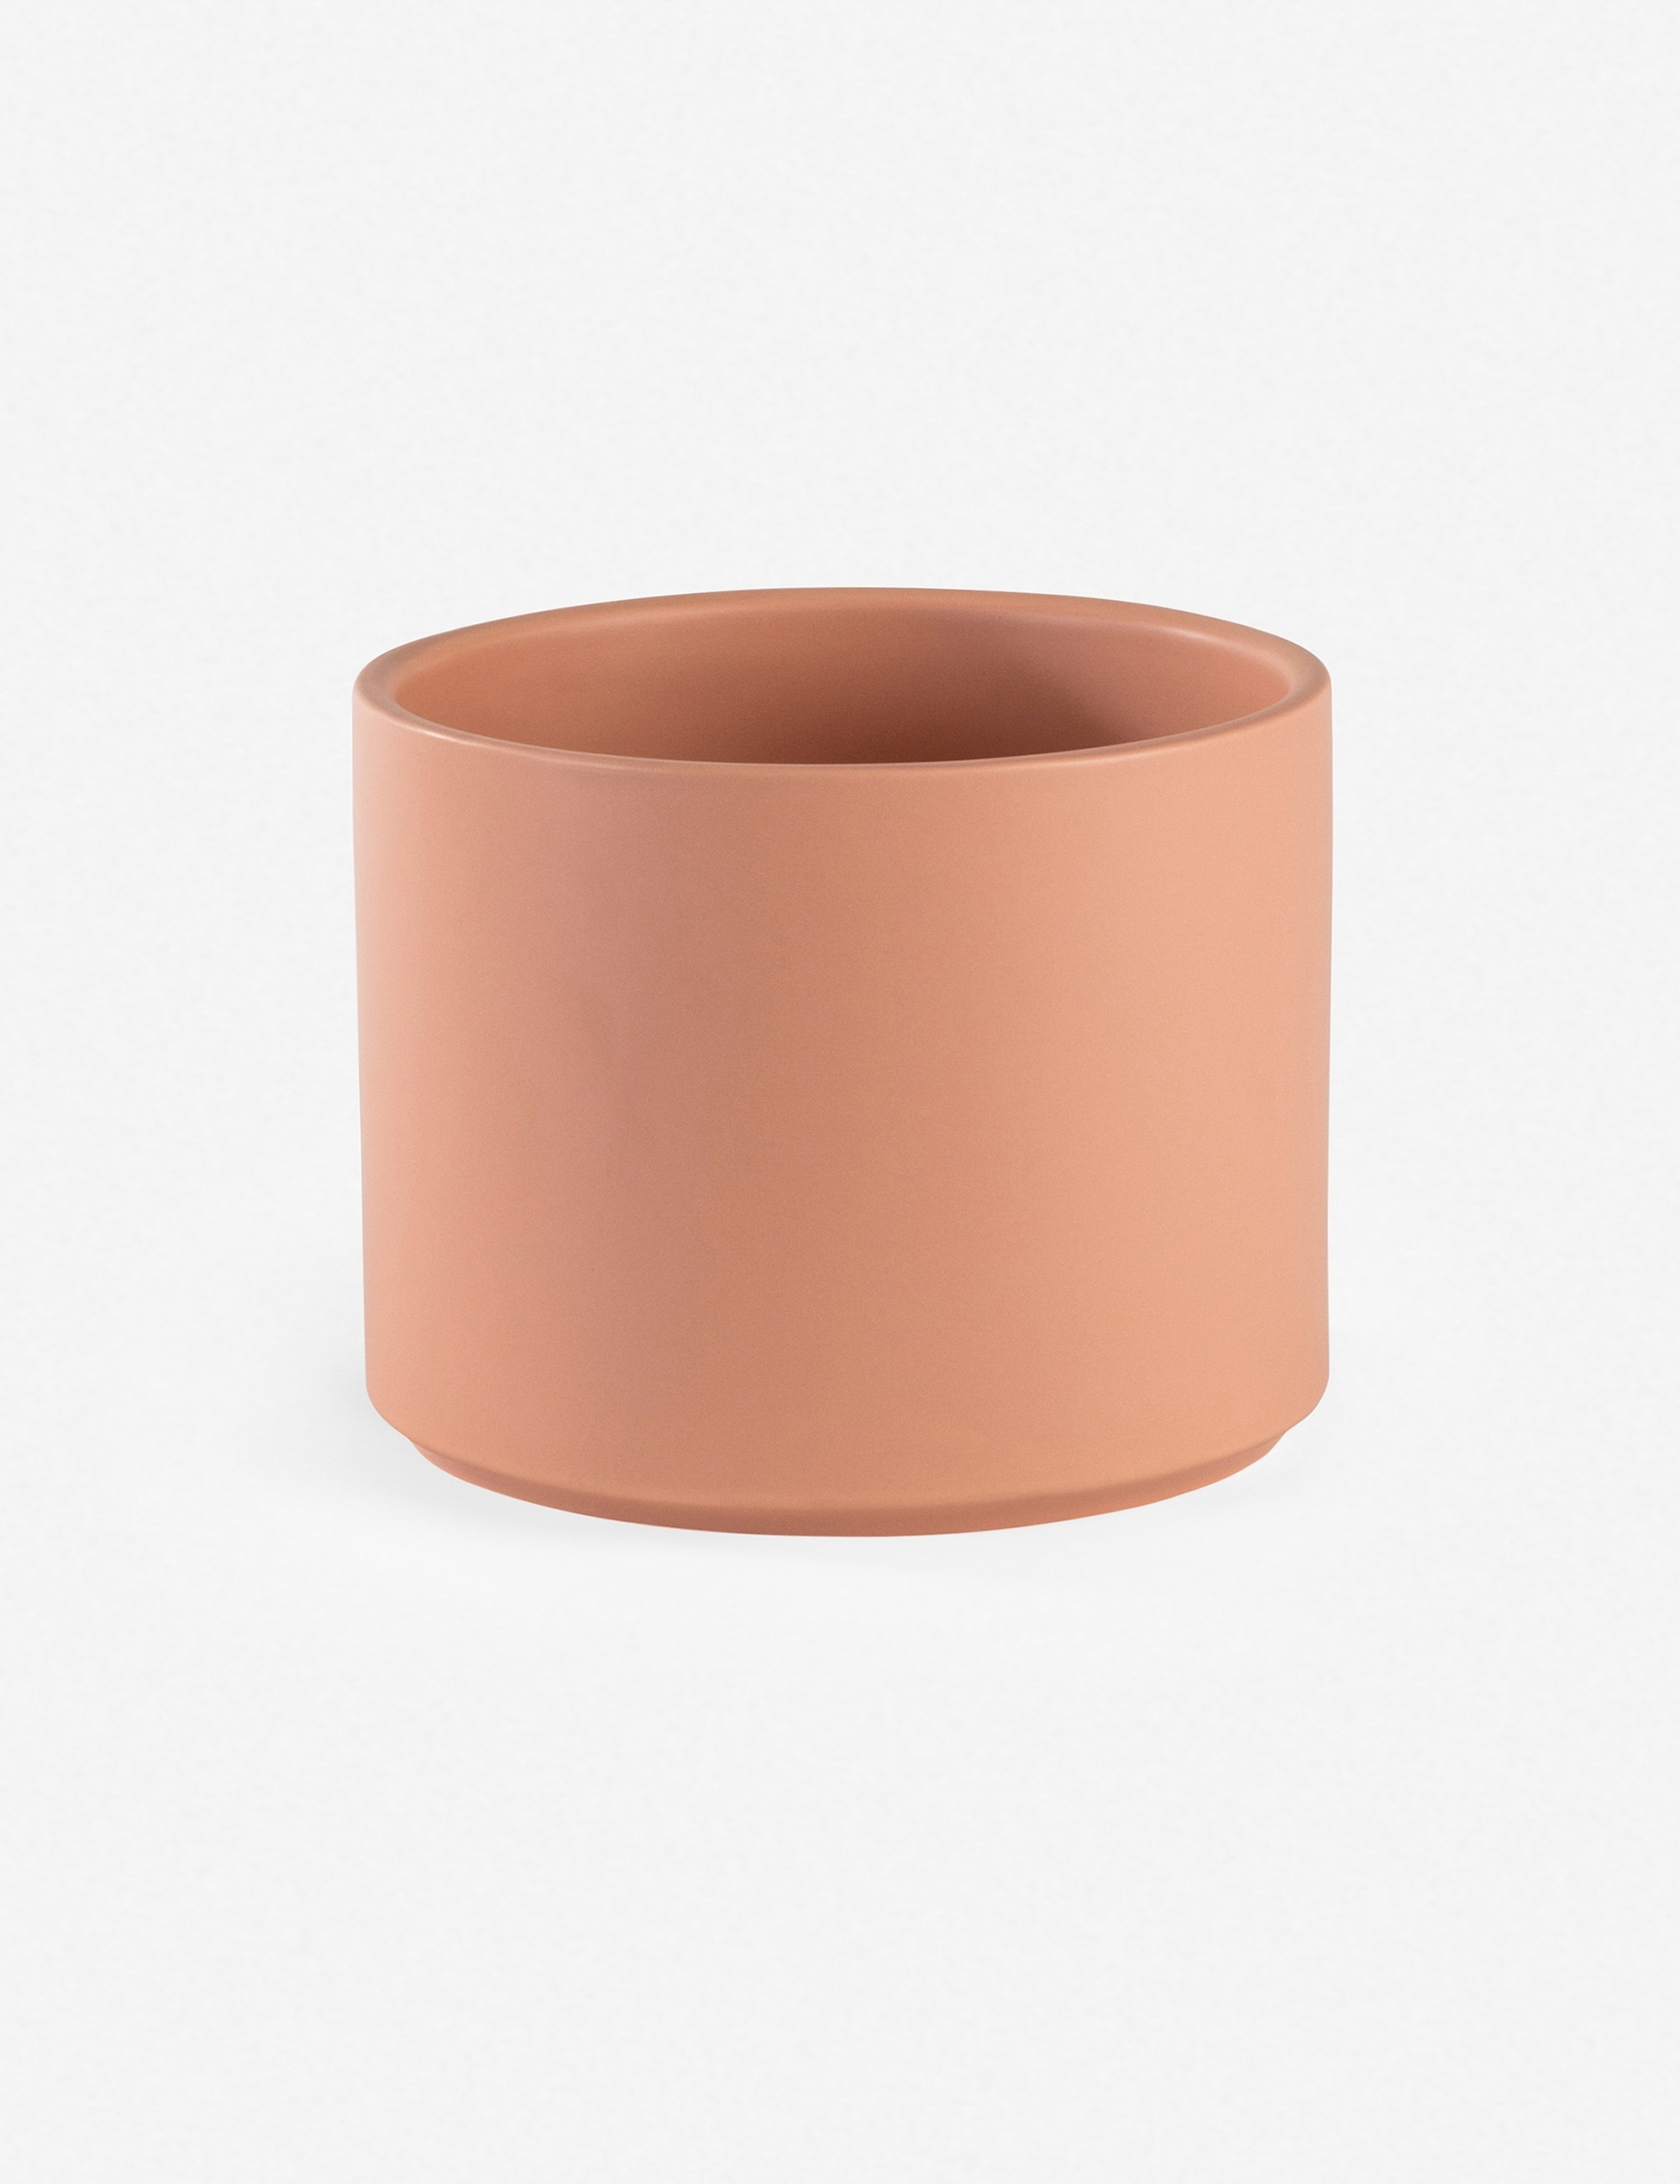 LBE Design Ceramic Planter, Peach 13"Dia x 18"H - with stand - Image 1